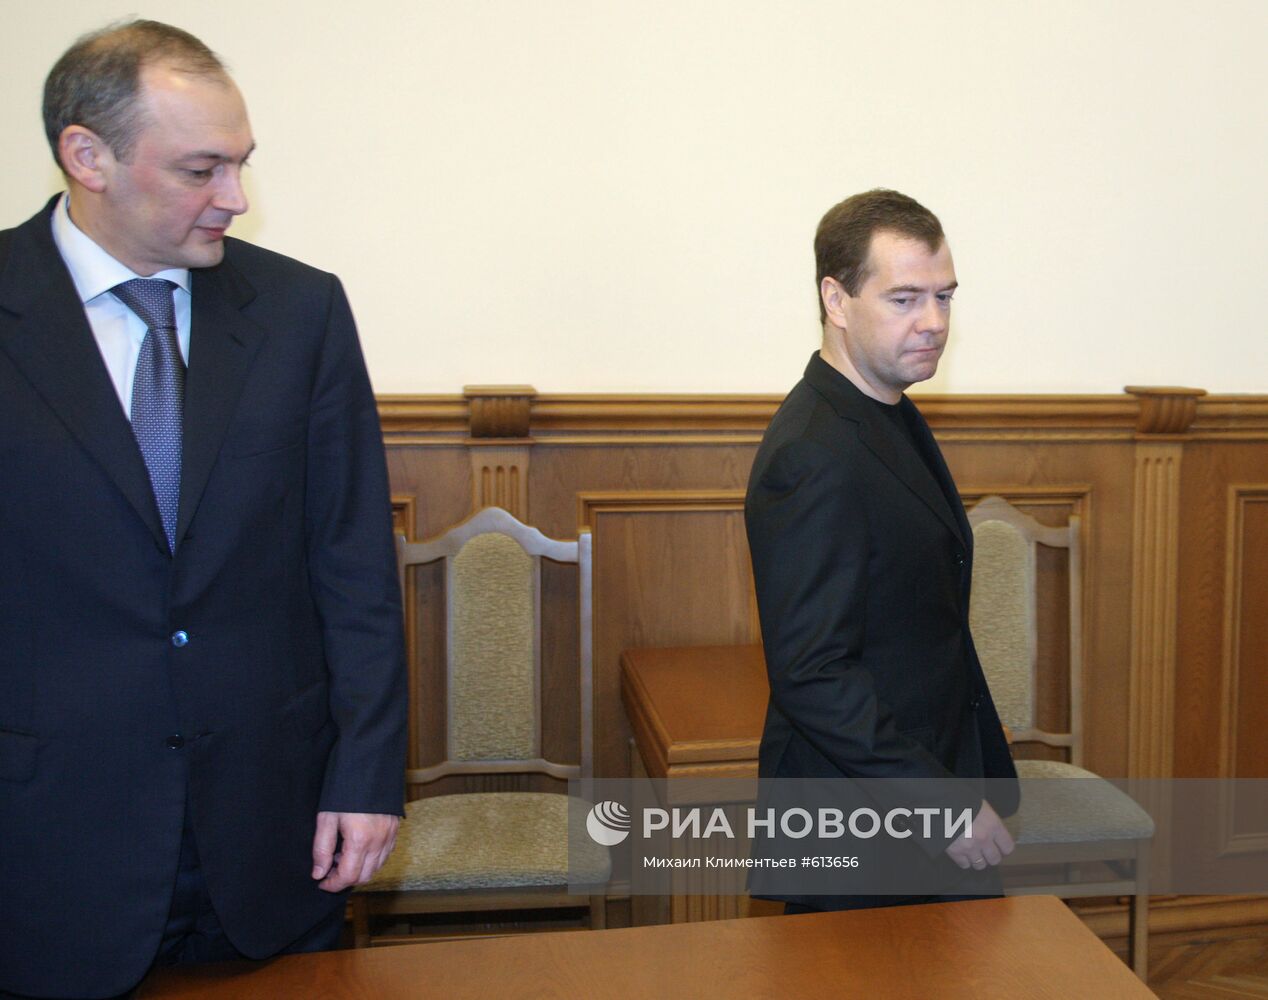 Дмитрий Медведев провел совещание в Махачкале